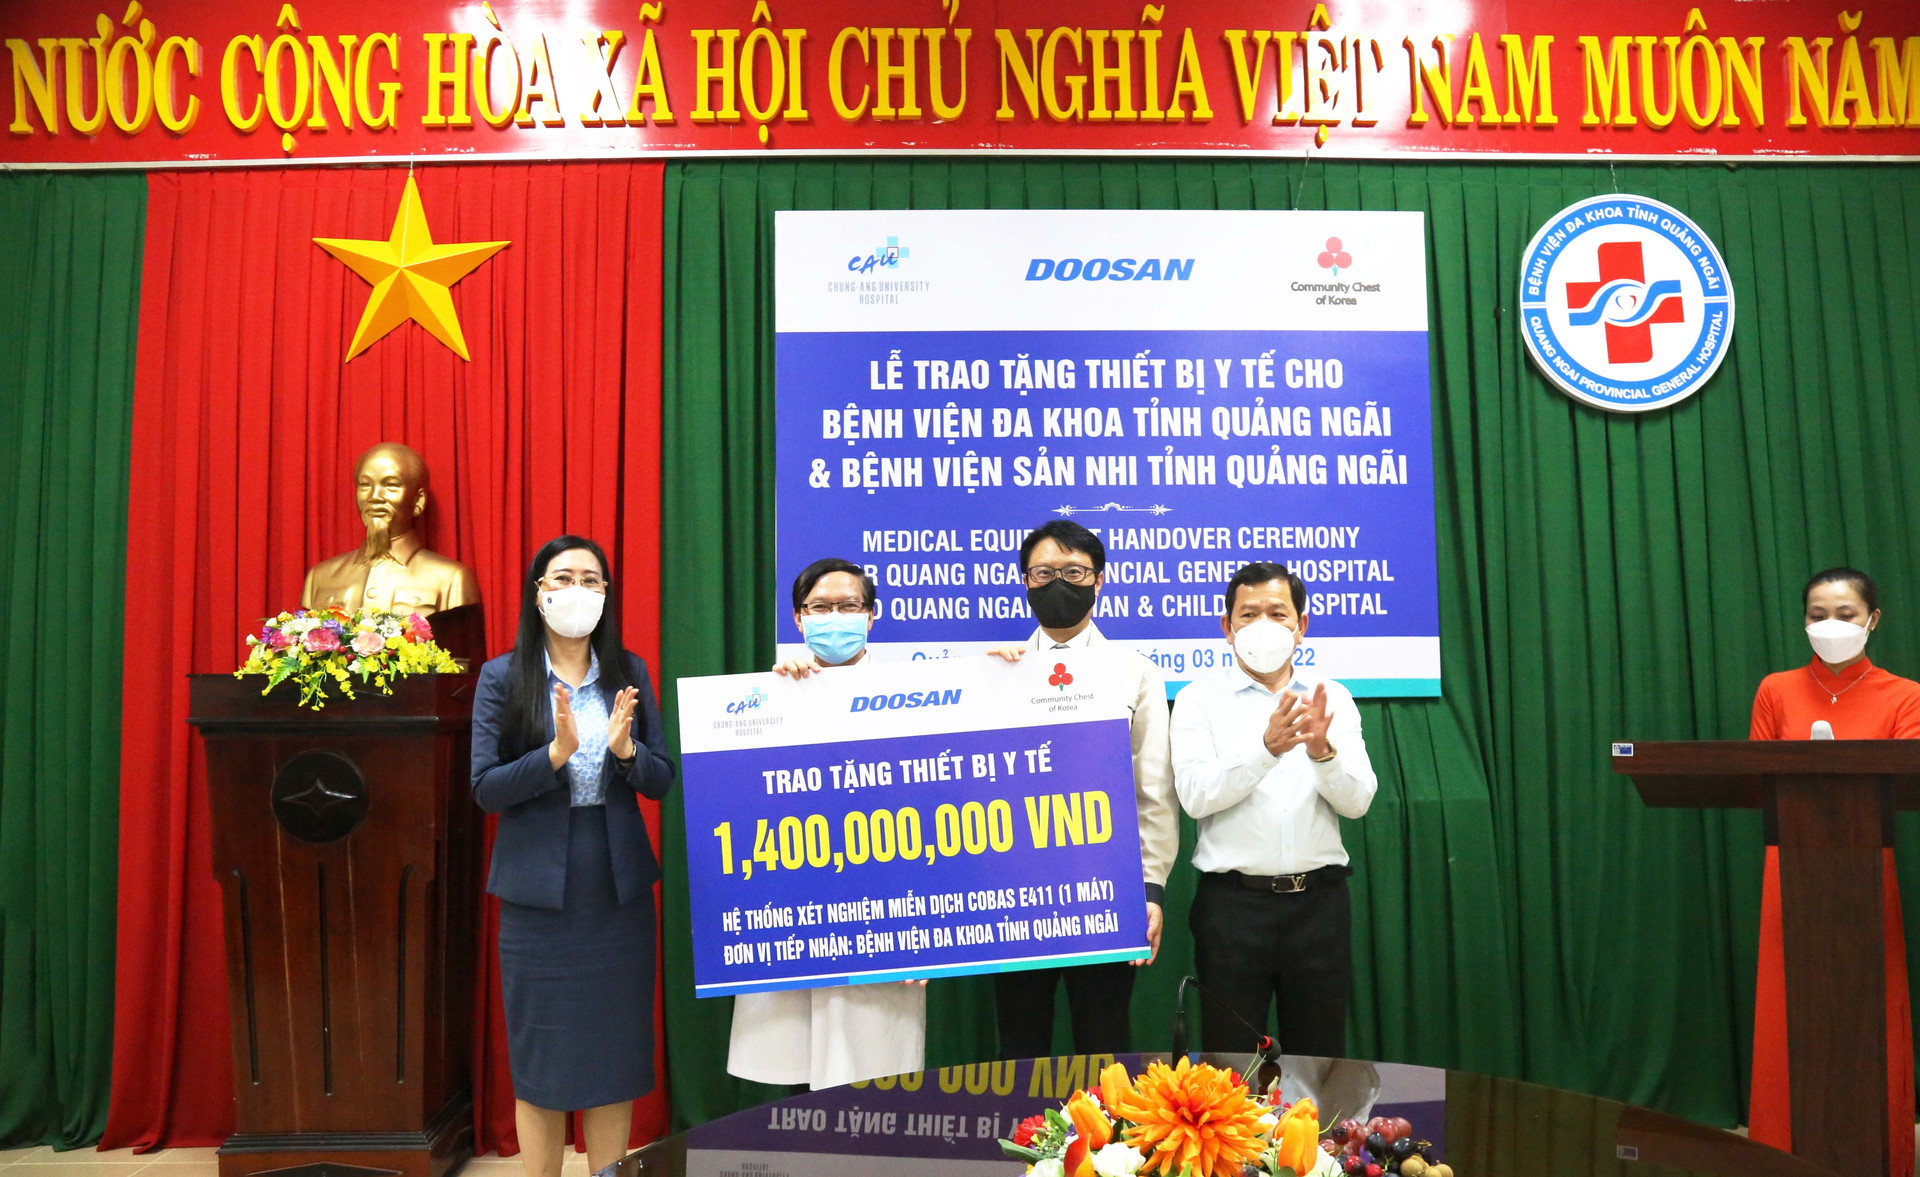 Quang Ngai Provincial General Hospital received a Cobas E411 immunoassay machine system worth 1.4 billion VND